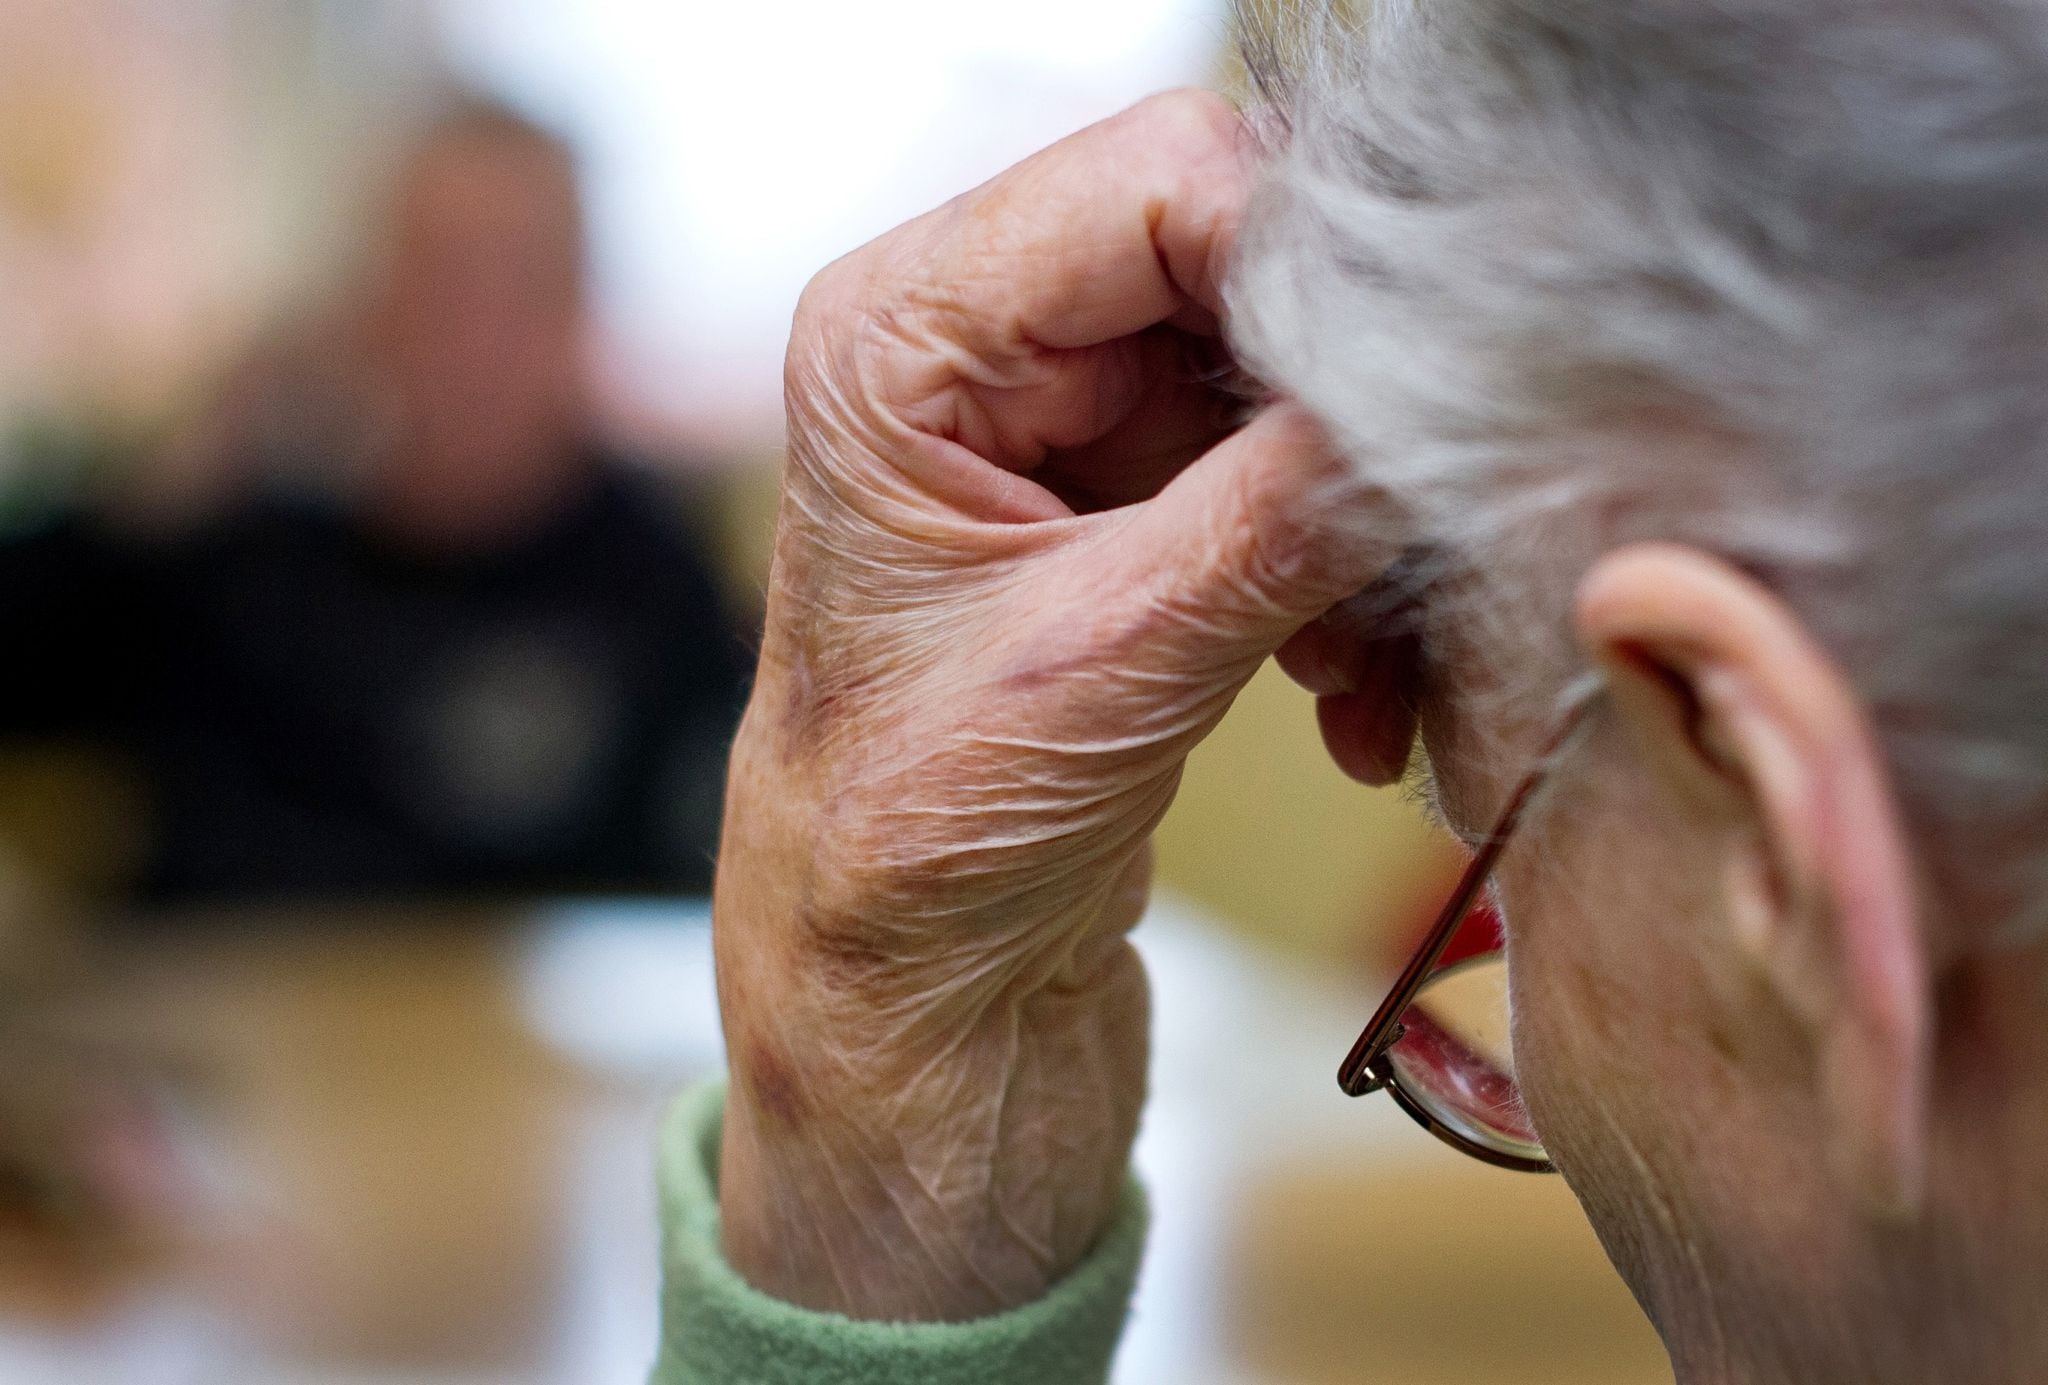 Los olvidos y problemas de memoria, síntomas iniciales de la Enfermedad de Alzheimer
Foto: Patrick Pleul/dpa